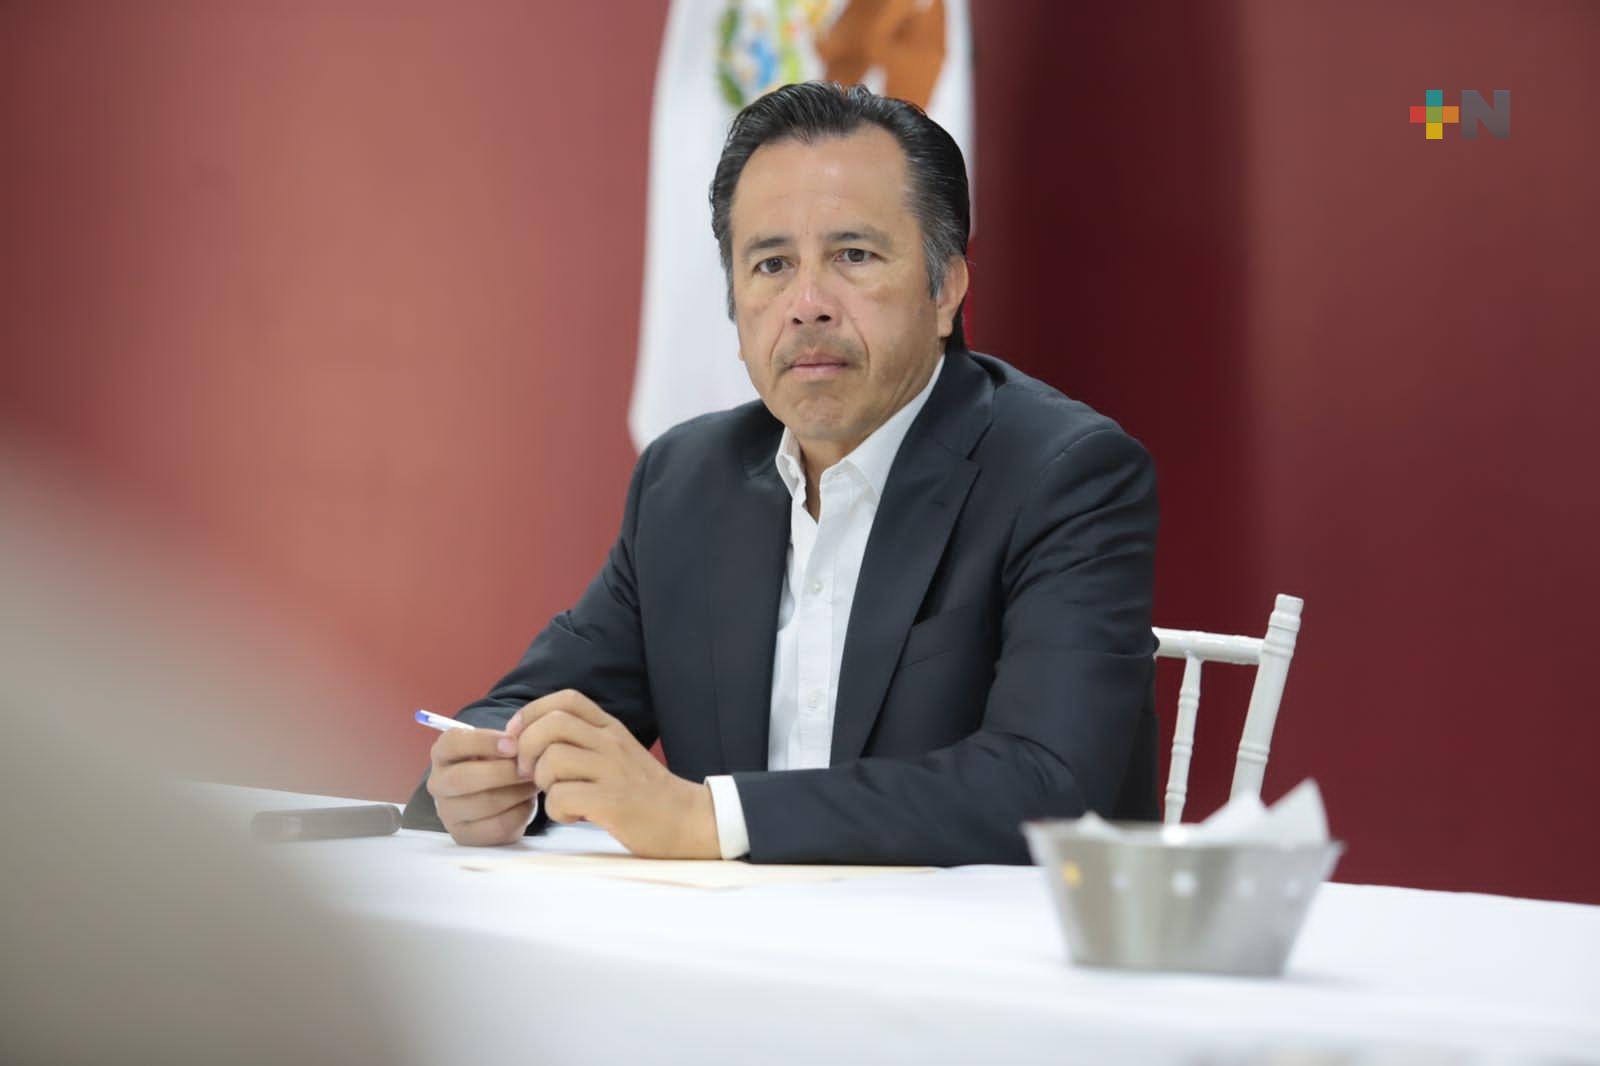 Confirma Gobernador detención del presunto autor intelectual del multihomicidio en Caballo Blanco